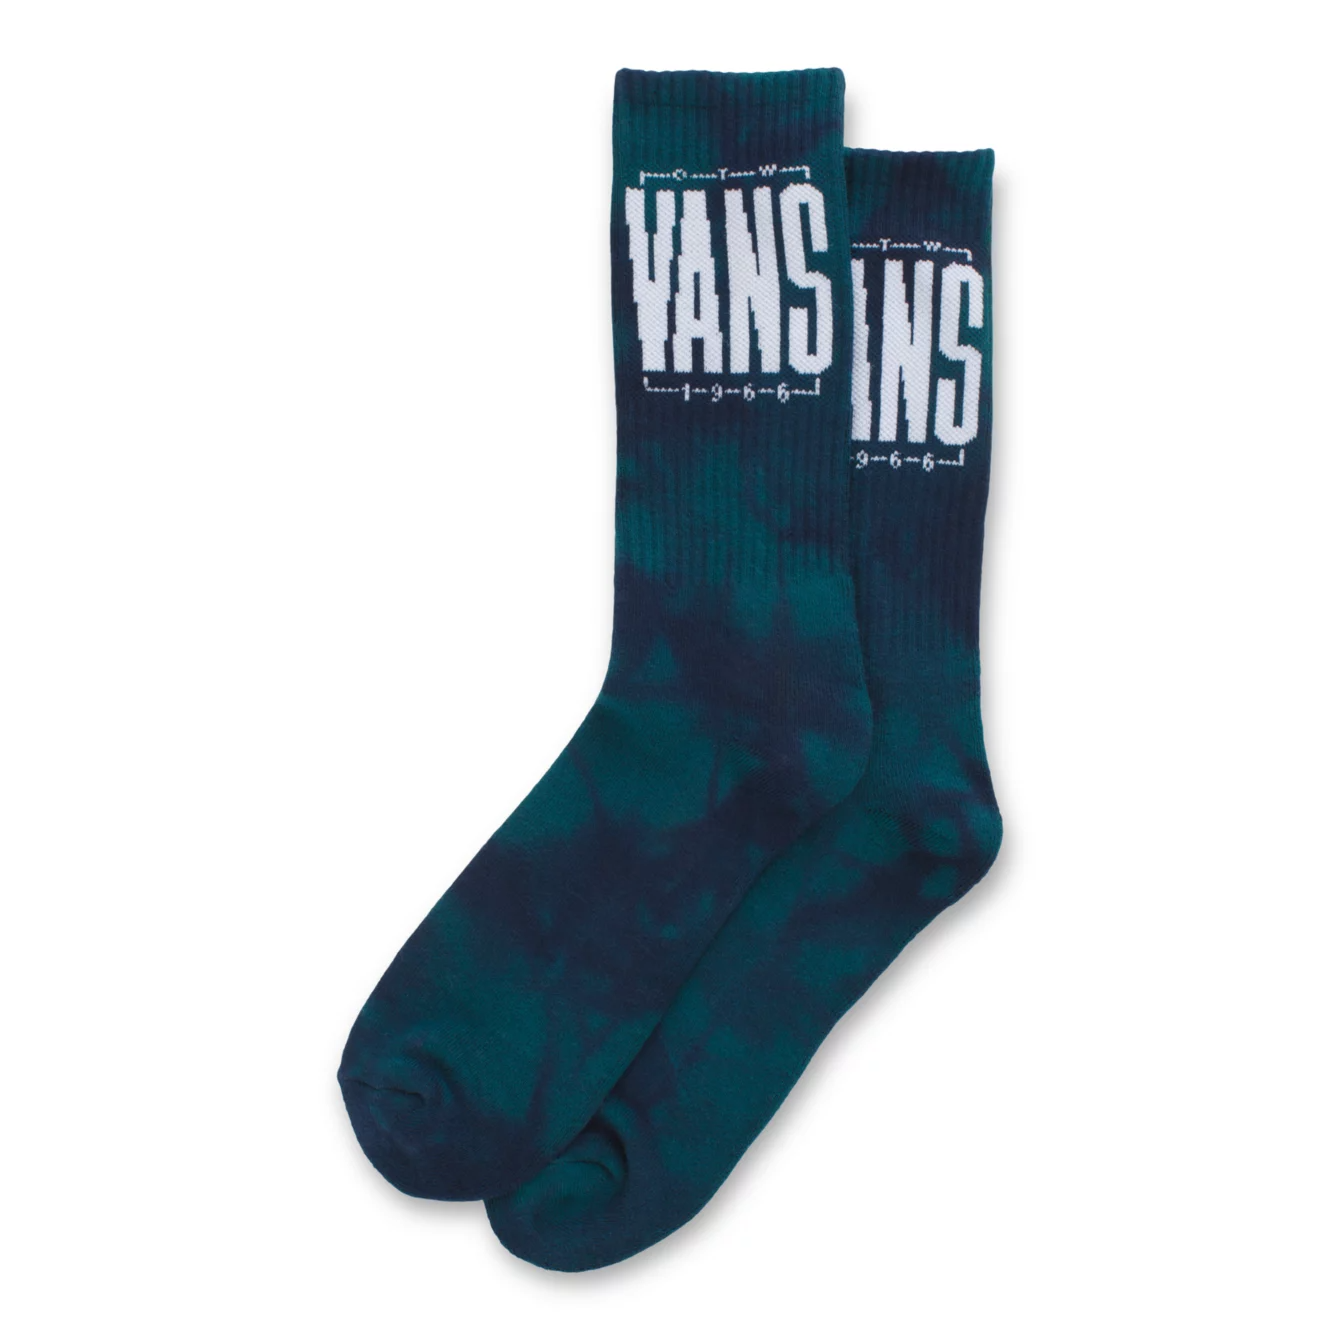 Vans Easton Tie Dye Crew Socks Blue Coral/Tie Dye